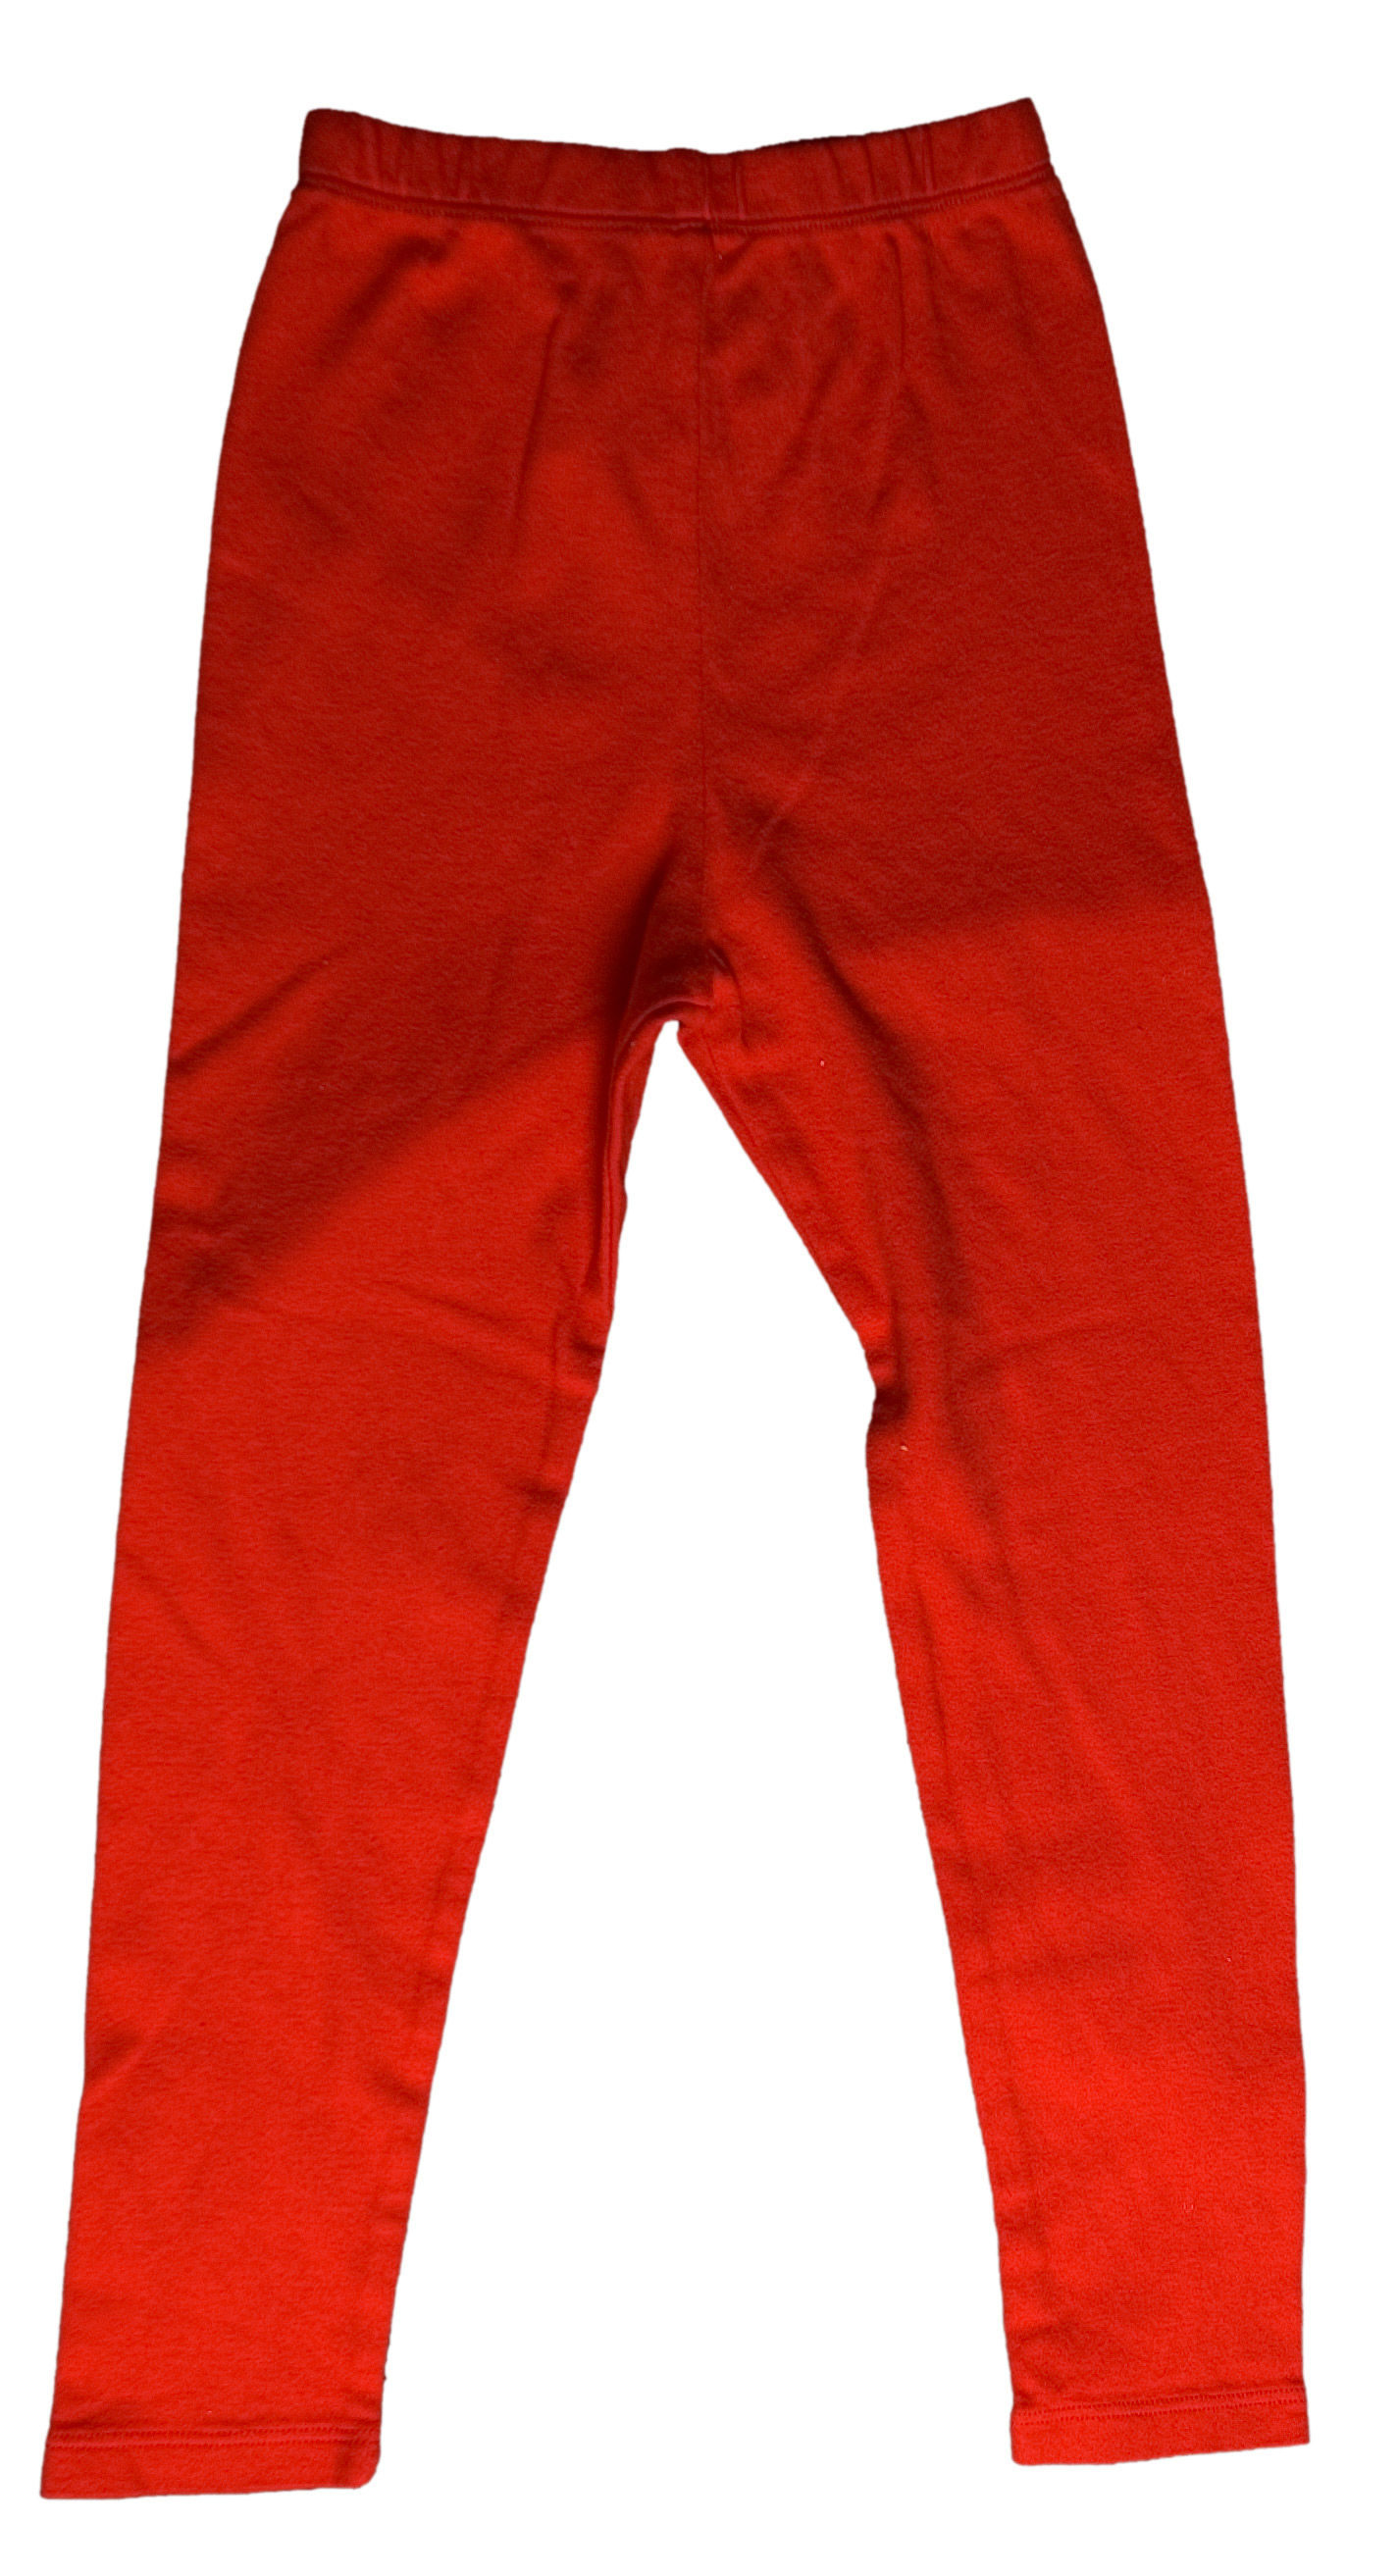 flap-happy-www-red-leggings.jpg